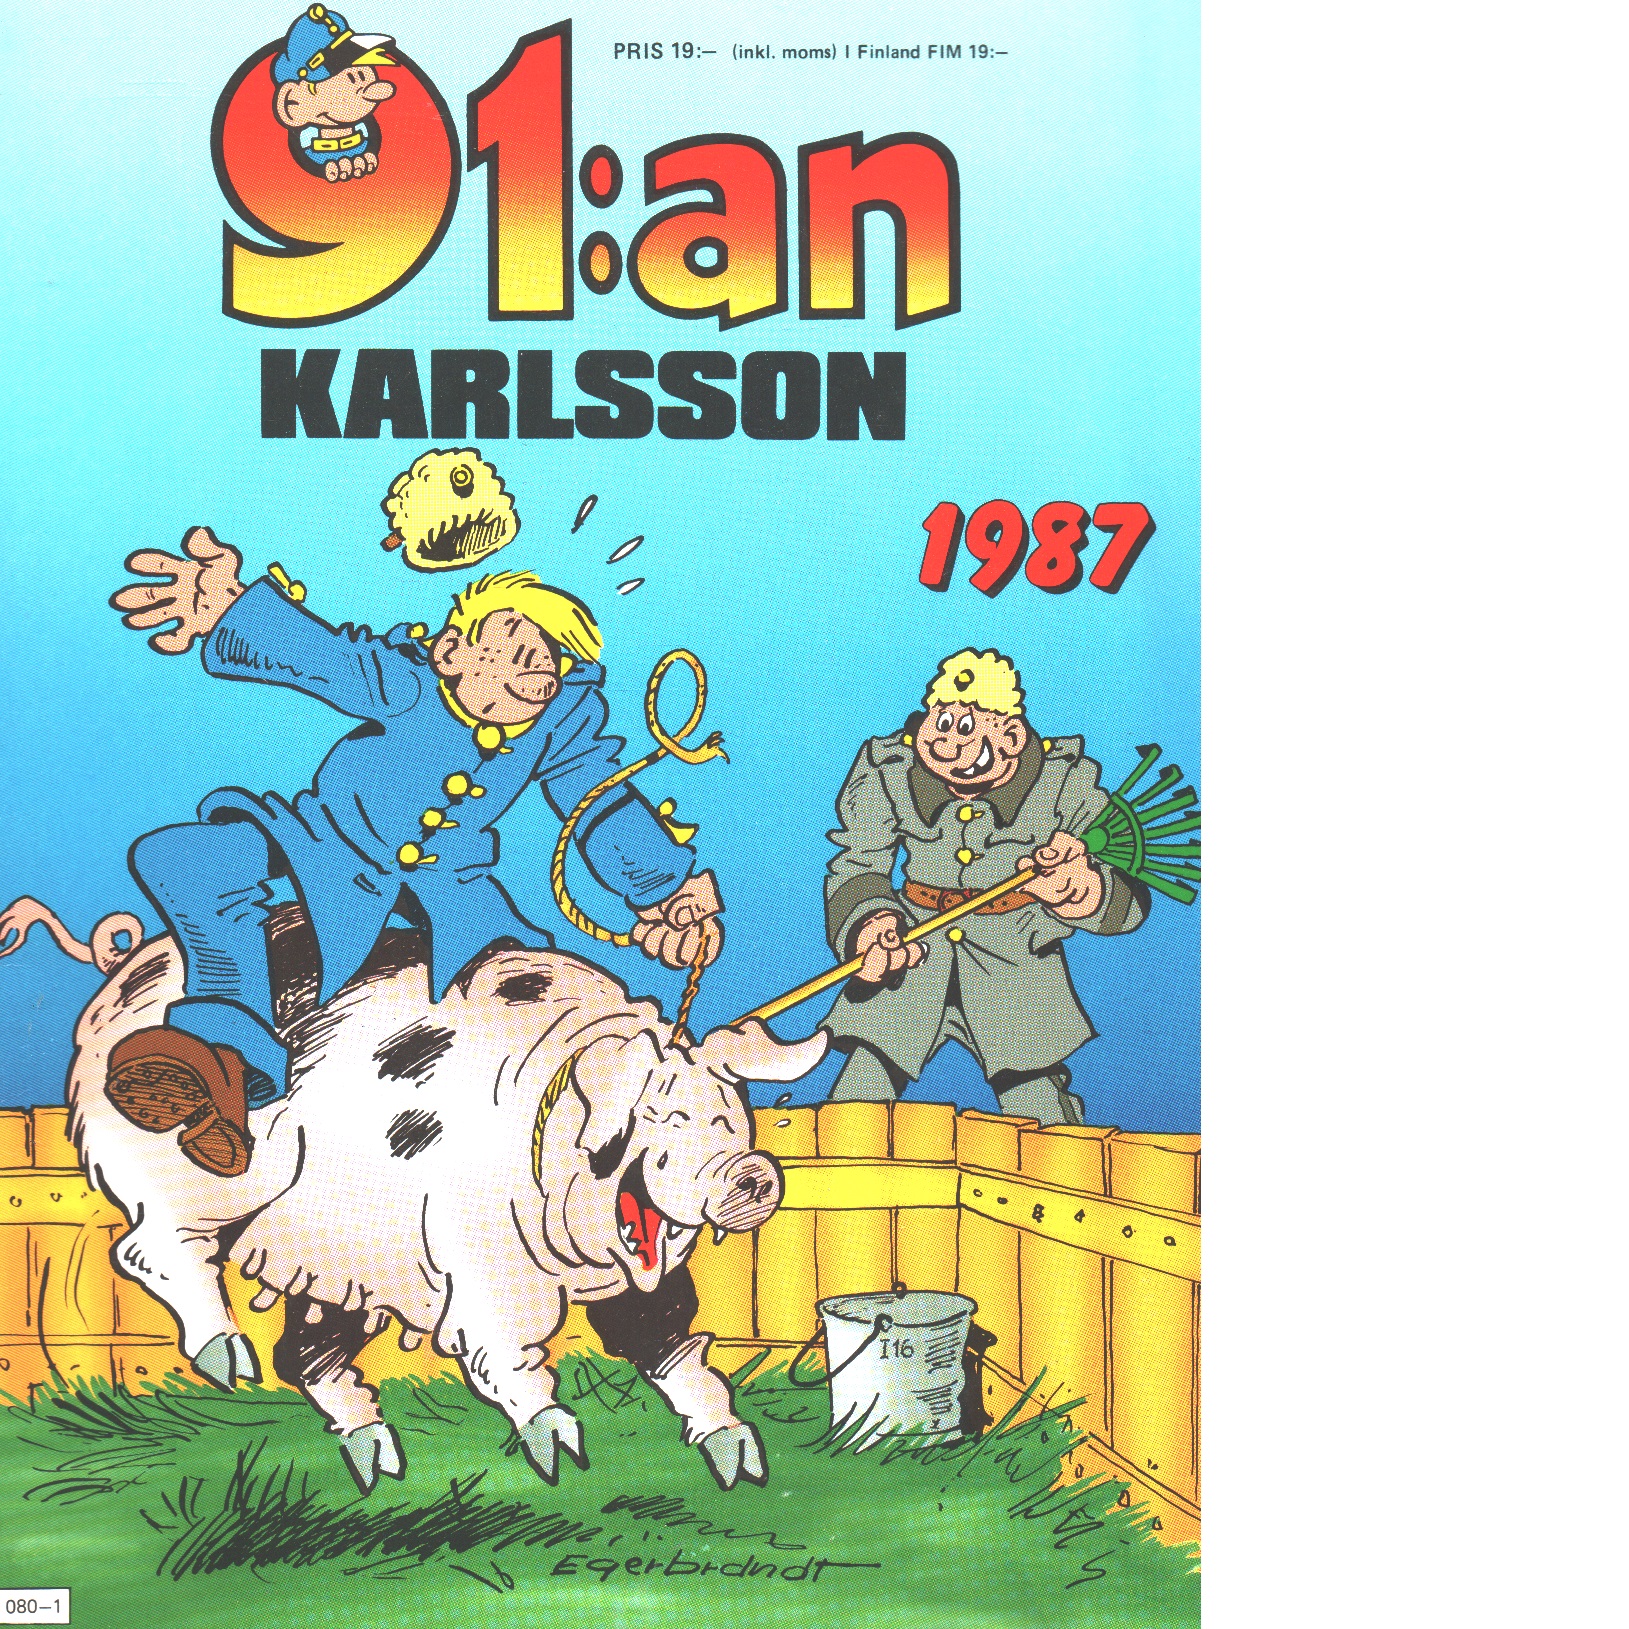 91:an Karlsson 1987 - Red.